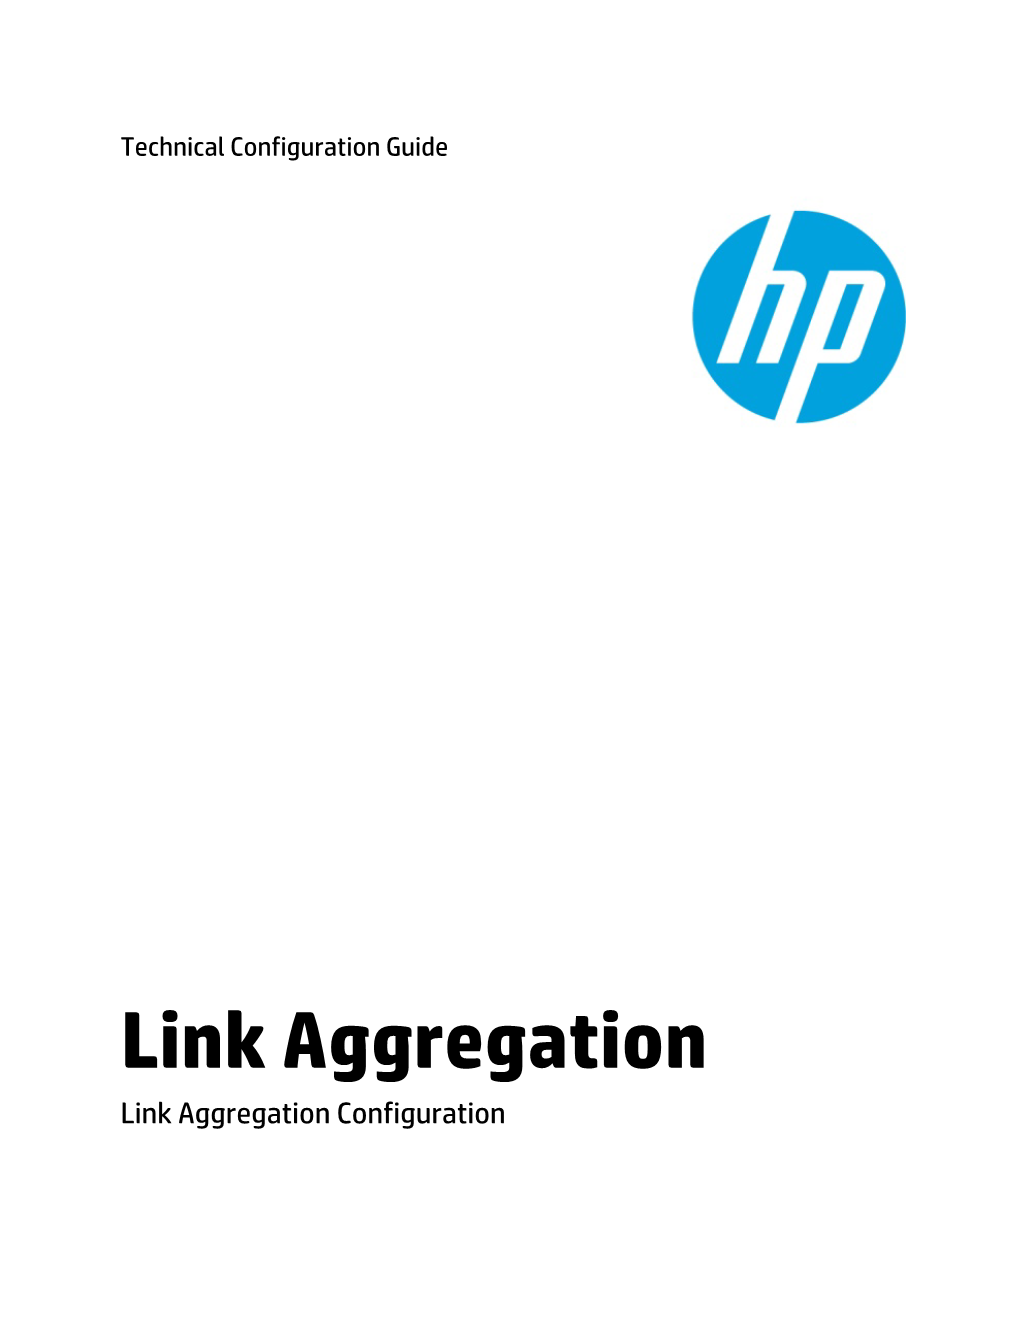 Link Aggregation Link Aggregation Configuration